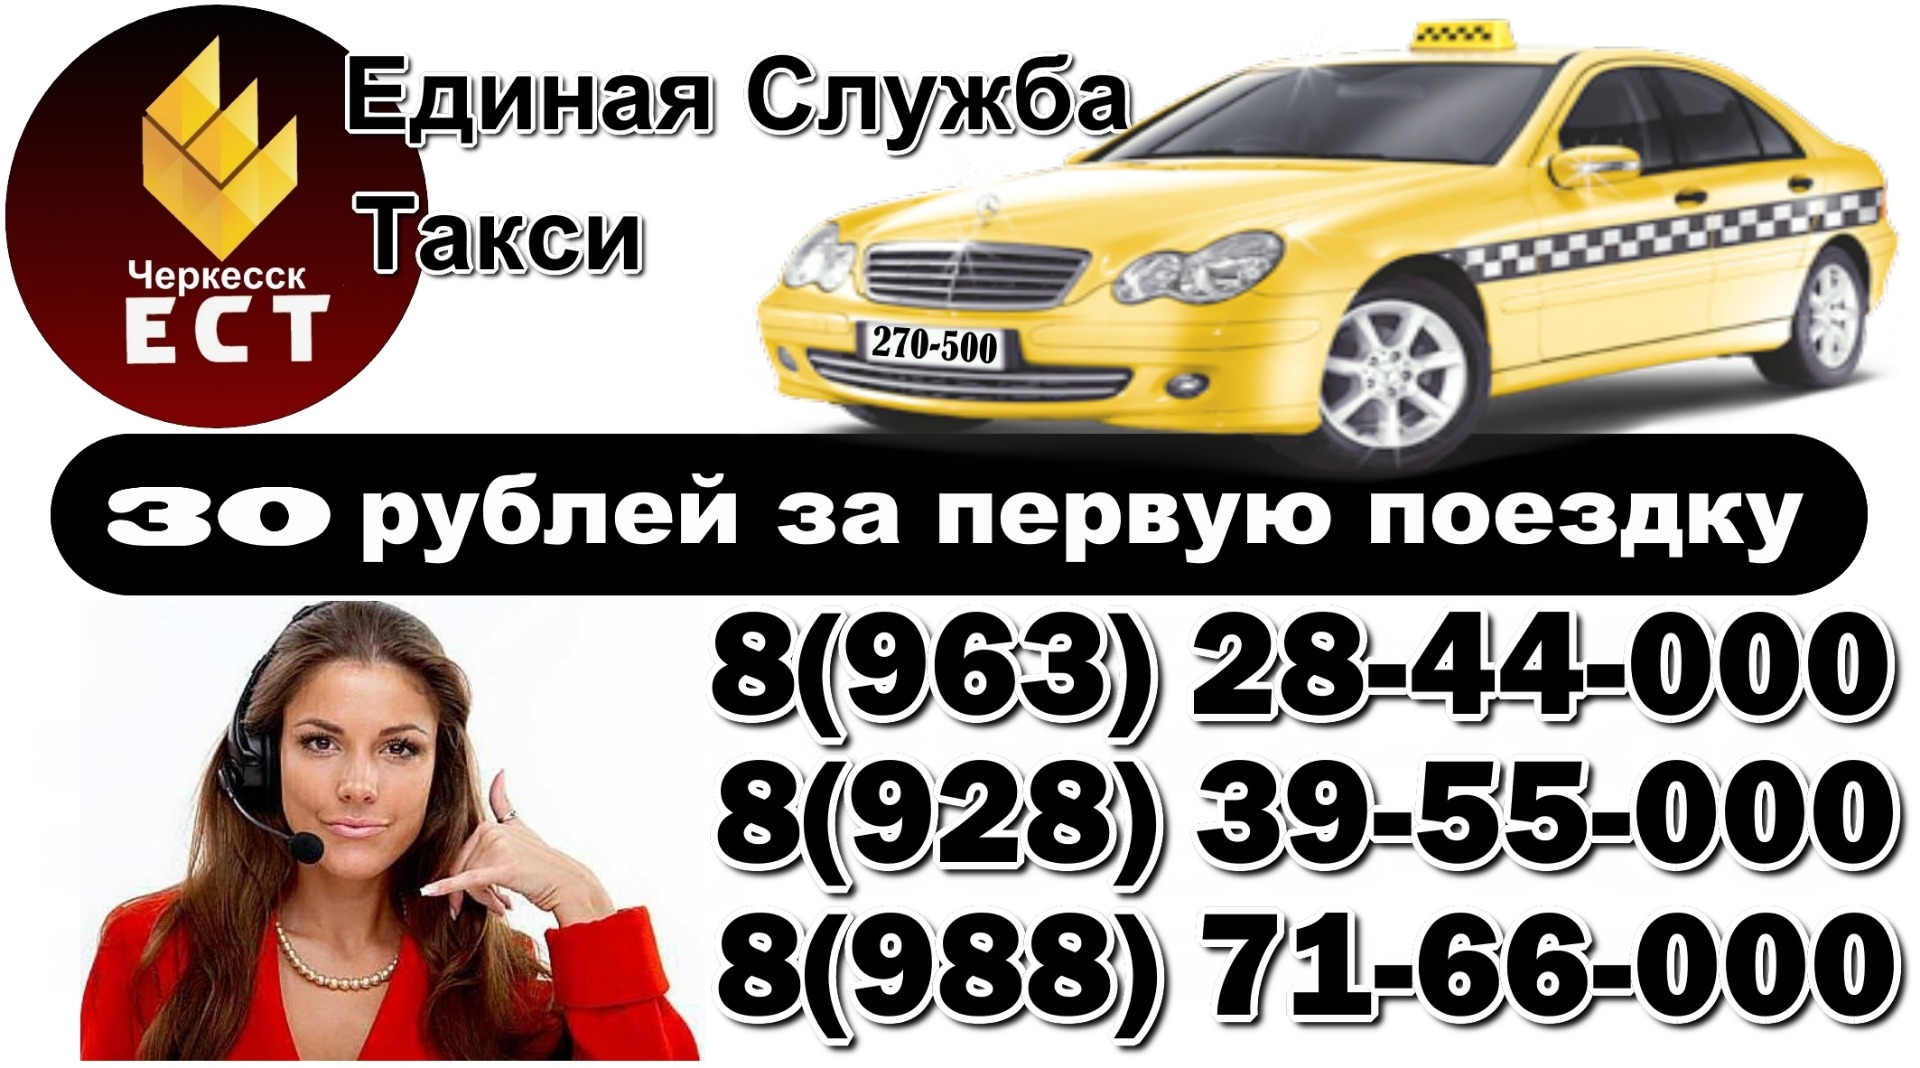 Городской номер черкесск. Номер телефона такси. Номера службы такси. Такси Единая служба номер. Такси Черкесск.